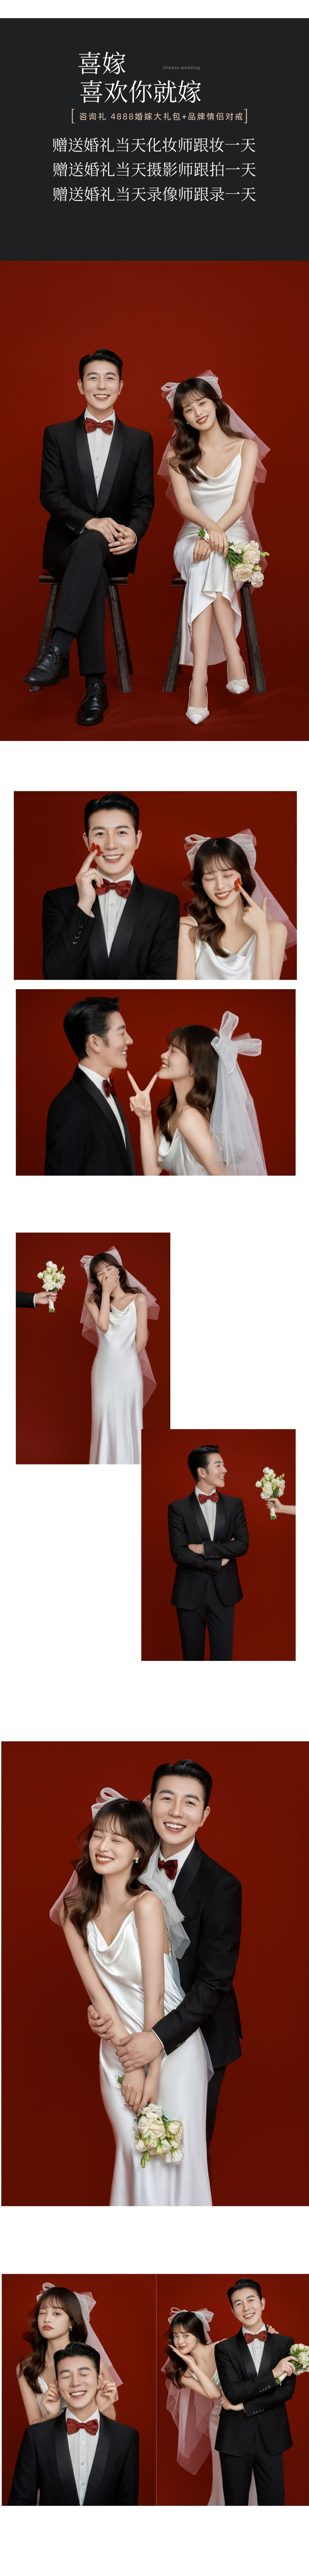 婚礼一条龙 婚纱照+婚礼摄影跟拍跟录跟妆